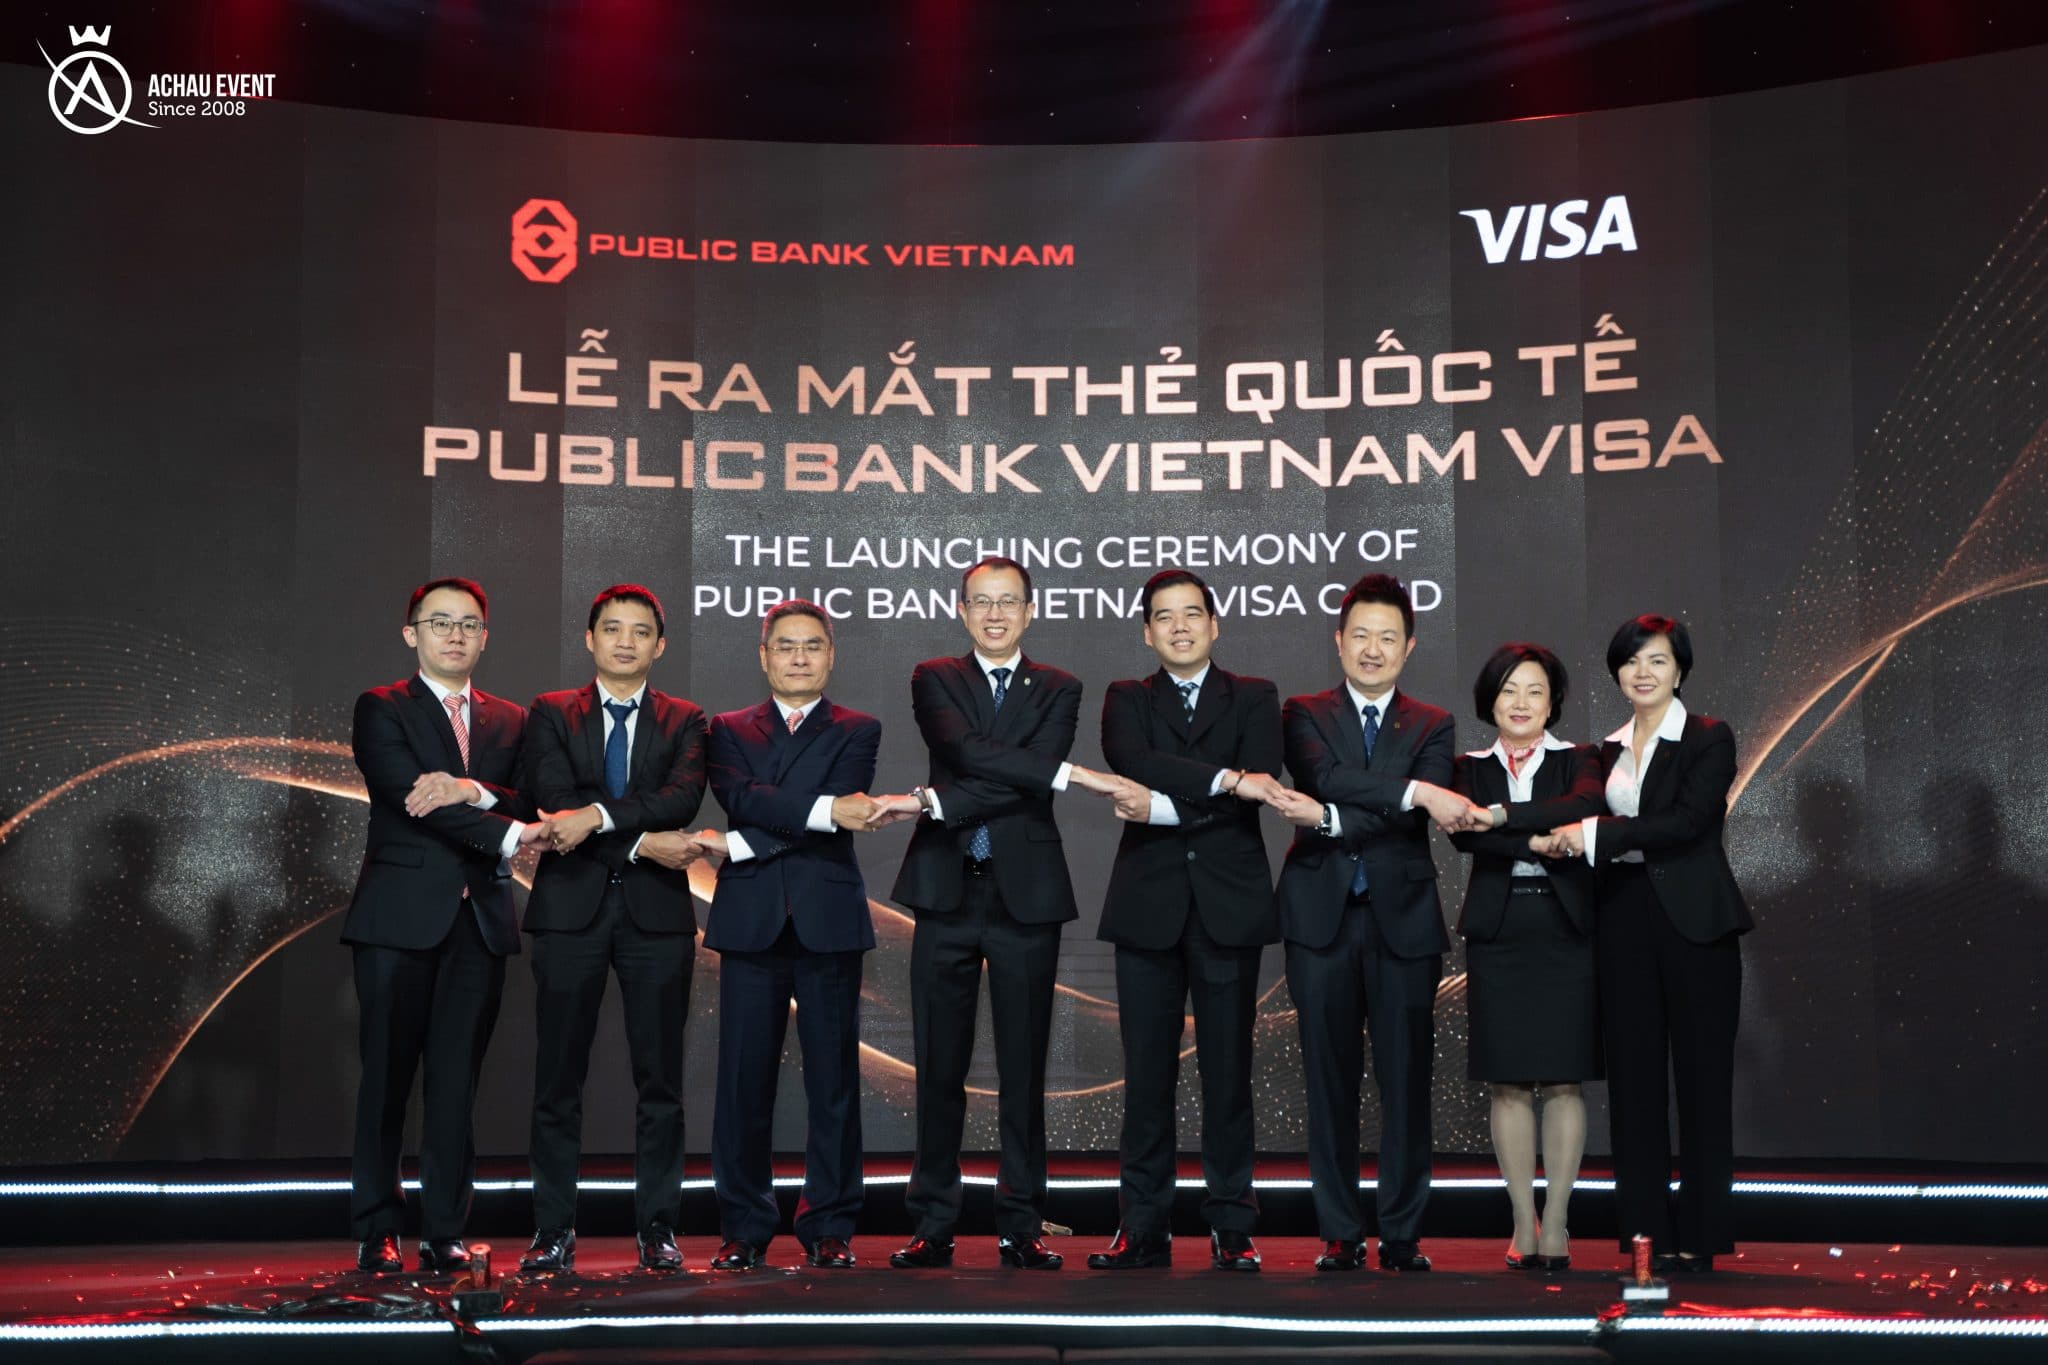 Đại diện Public Bank Vietnam kết nối cùng đại diện các bên đối tác, khách hàng